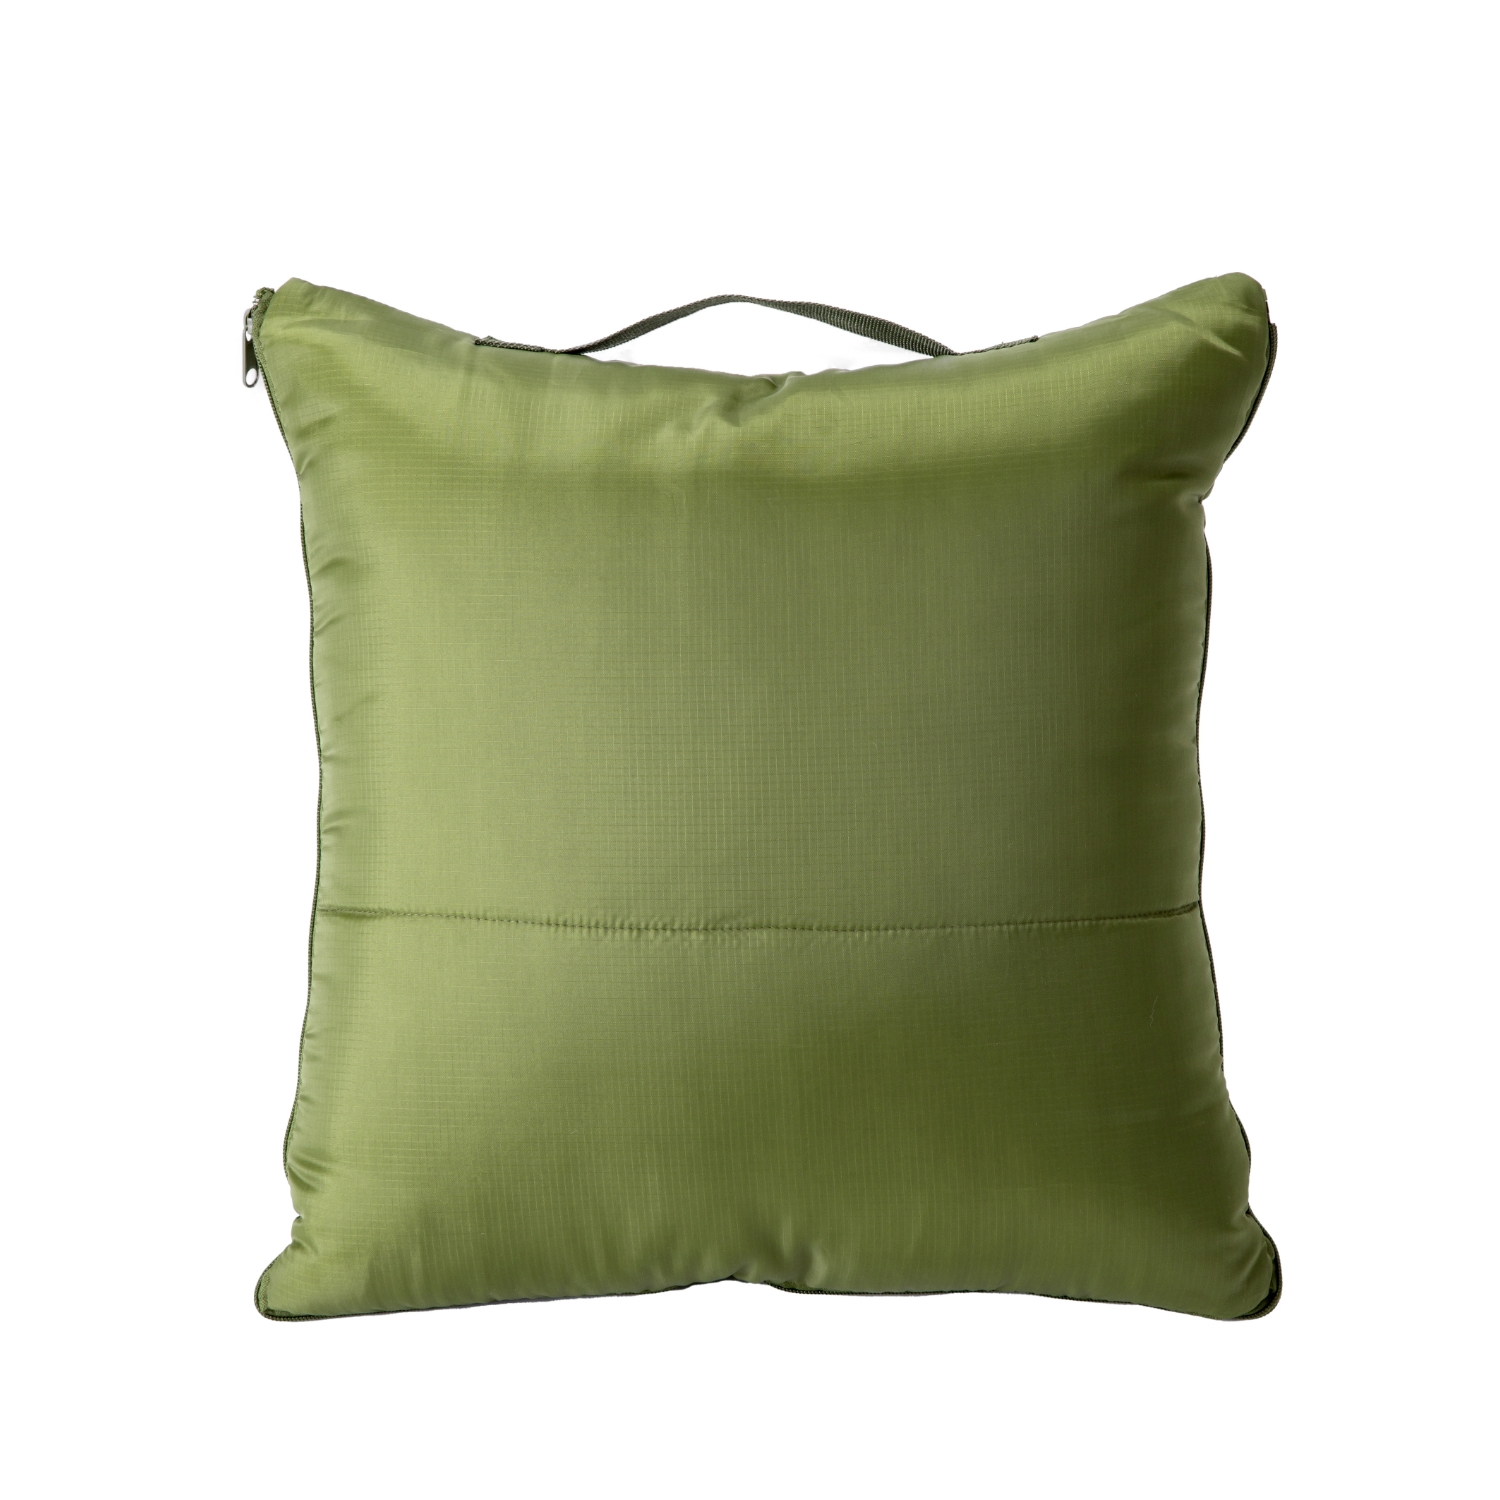 SONAENO クッション型多機能寝袋 オリーブグリーン 新品未使用未開封